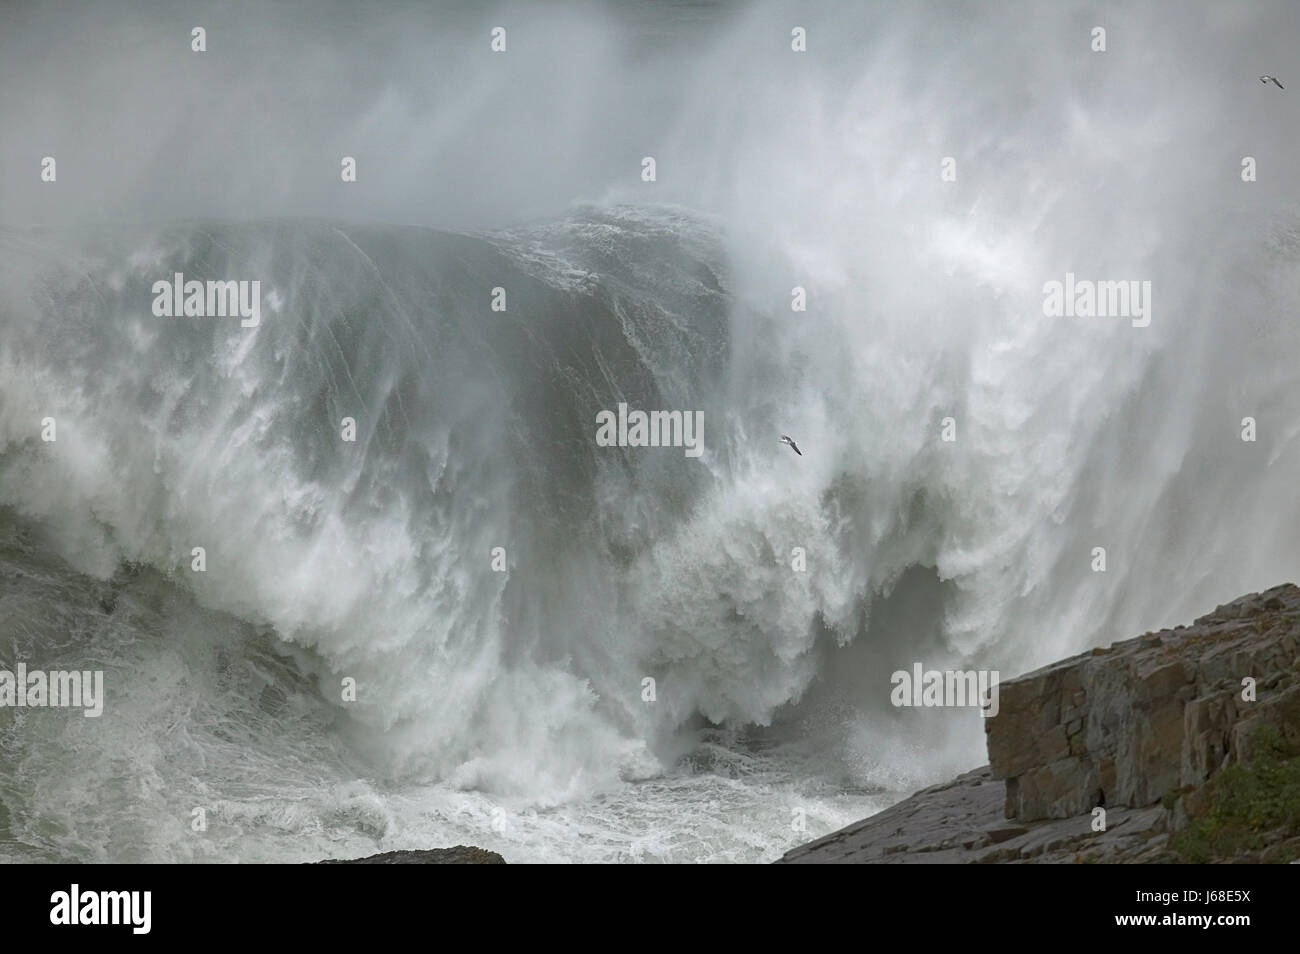 Les vagues de l'onde de l'eau salée de l'océan Atlantique mer océan eau tempête tempêtes d'aérosols Banque D'Images